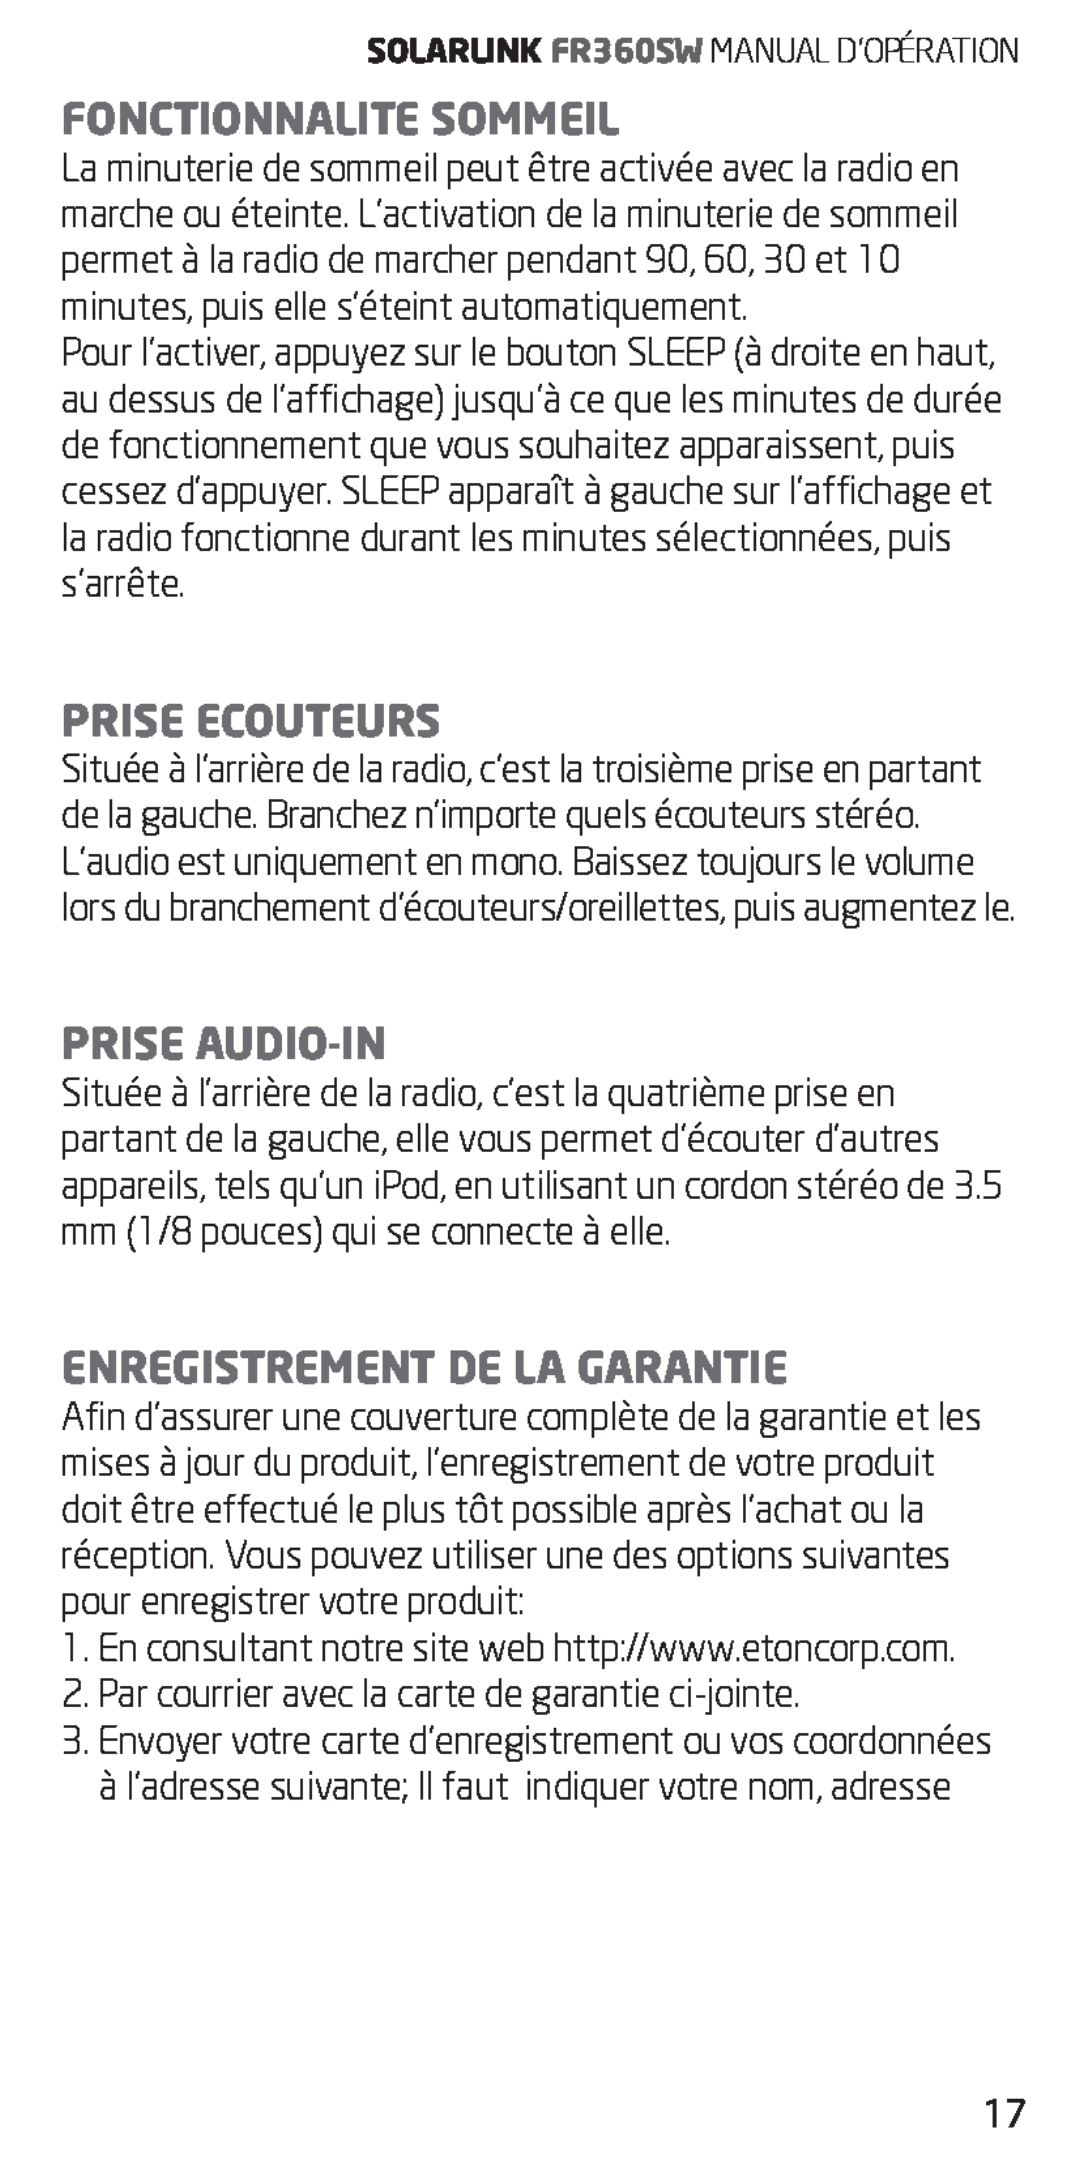 Eton FR360 owner manual Fonctionnalite Sommeil, Prise Ecouteurs, Prise Audio-In, Enregistrement De La Garantie 